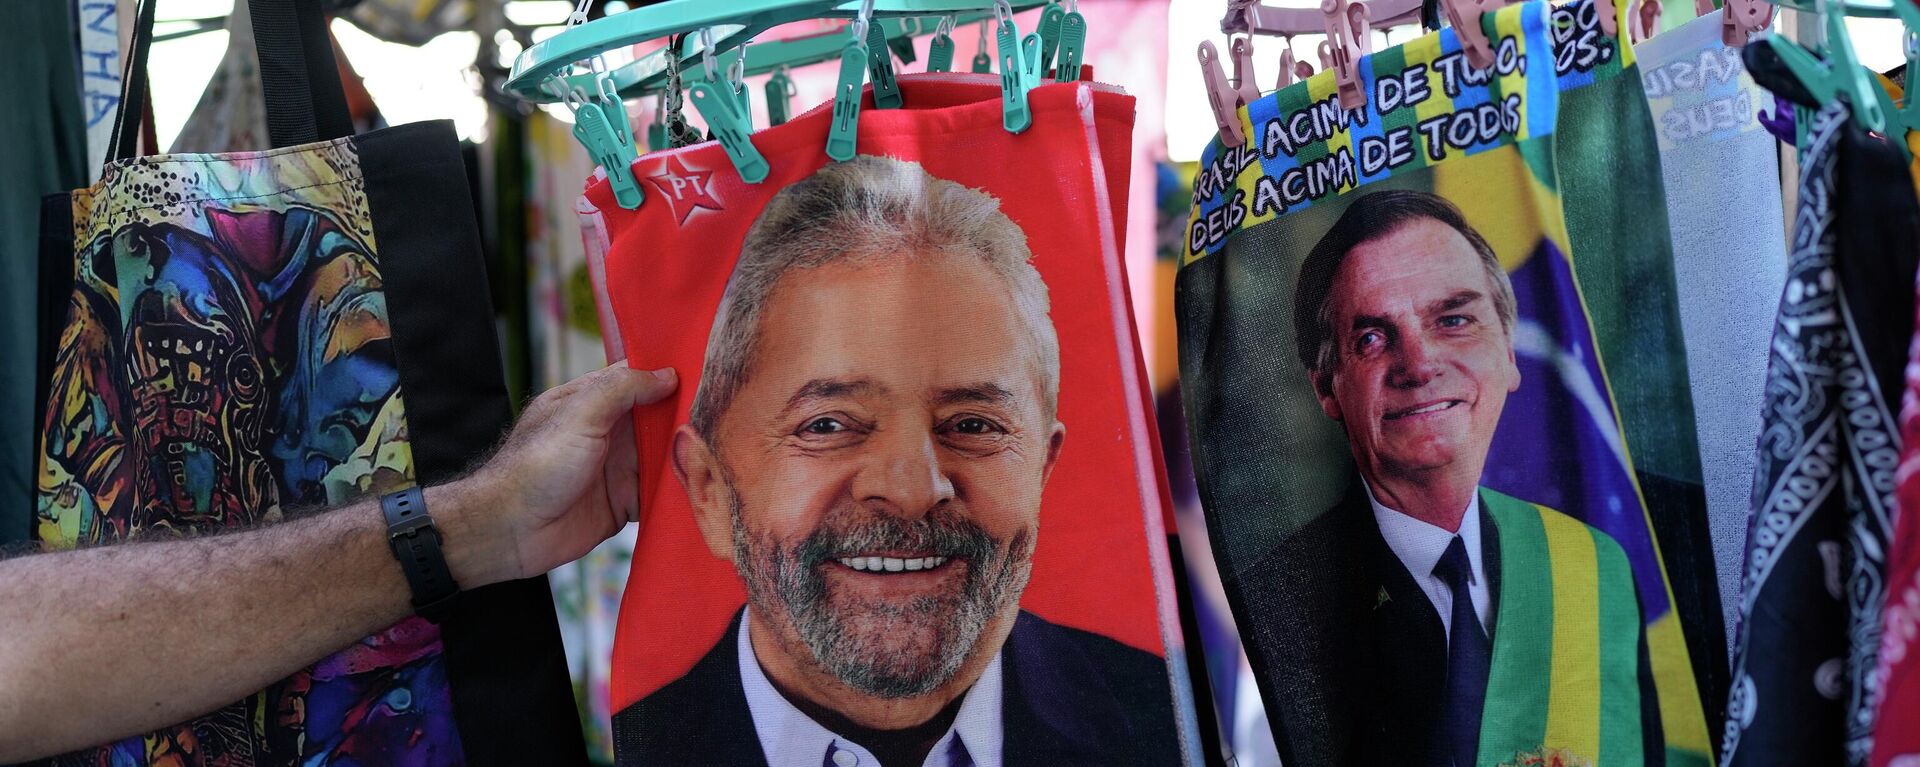 Retratos del expresidente brasileño Luiz Inácio Lula da Silva (2003-2011) y el actual mandatario, Jair Bolsonaro, en unas bolsas - Sputnik Mundo, 1920, 05.10.2022